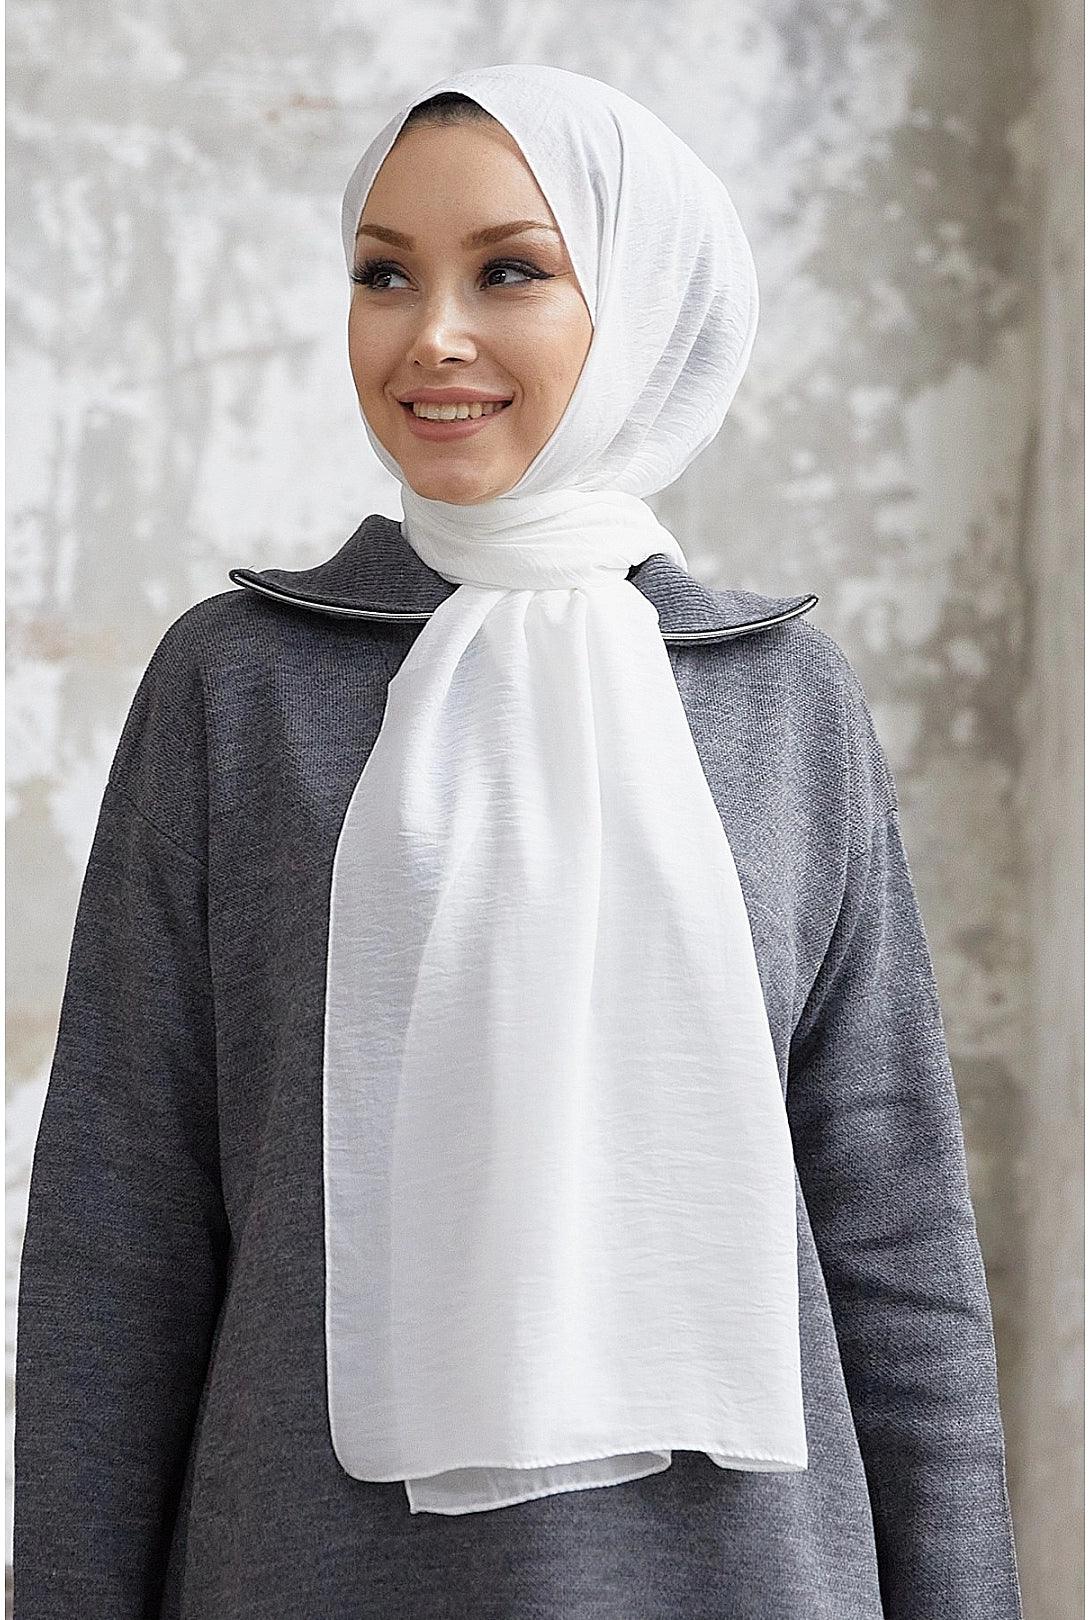 Jazz White Hijab Scarf for Women - White